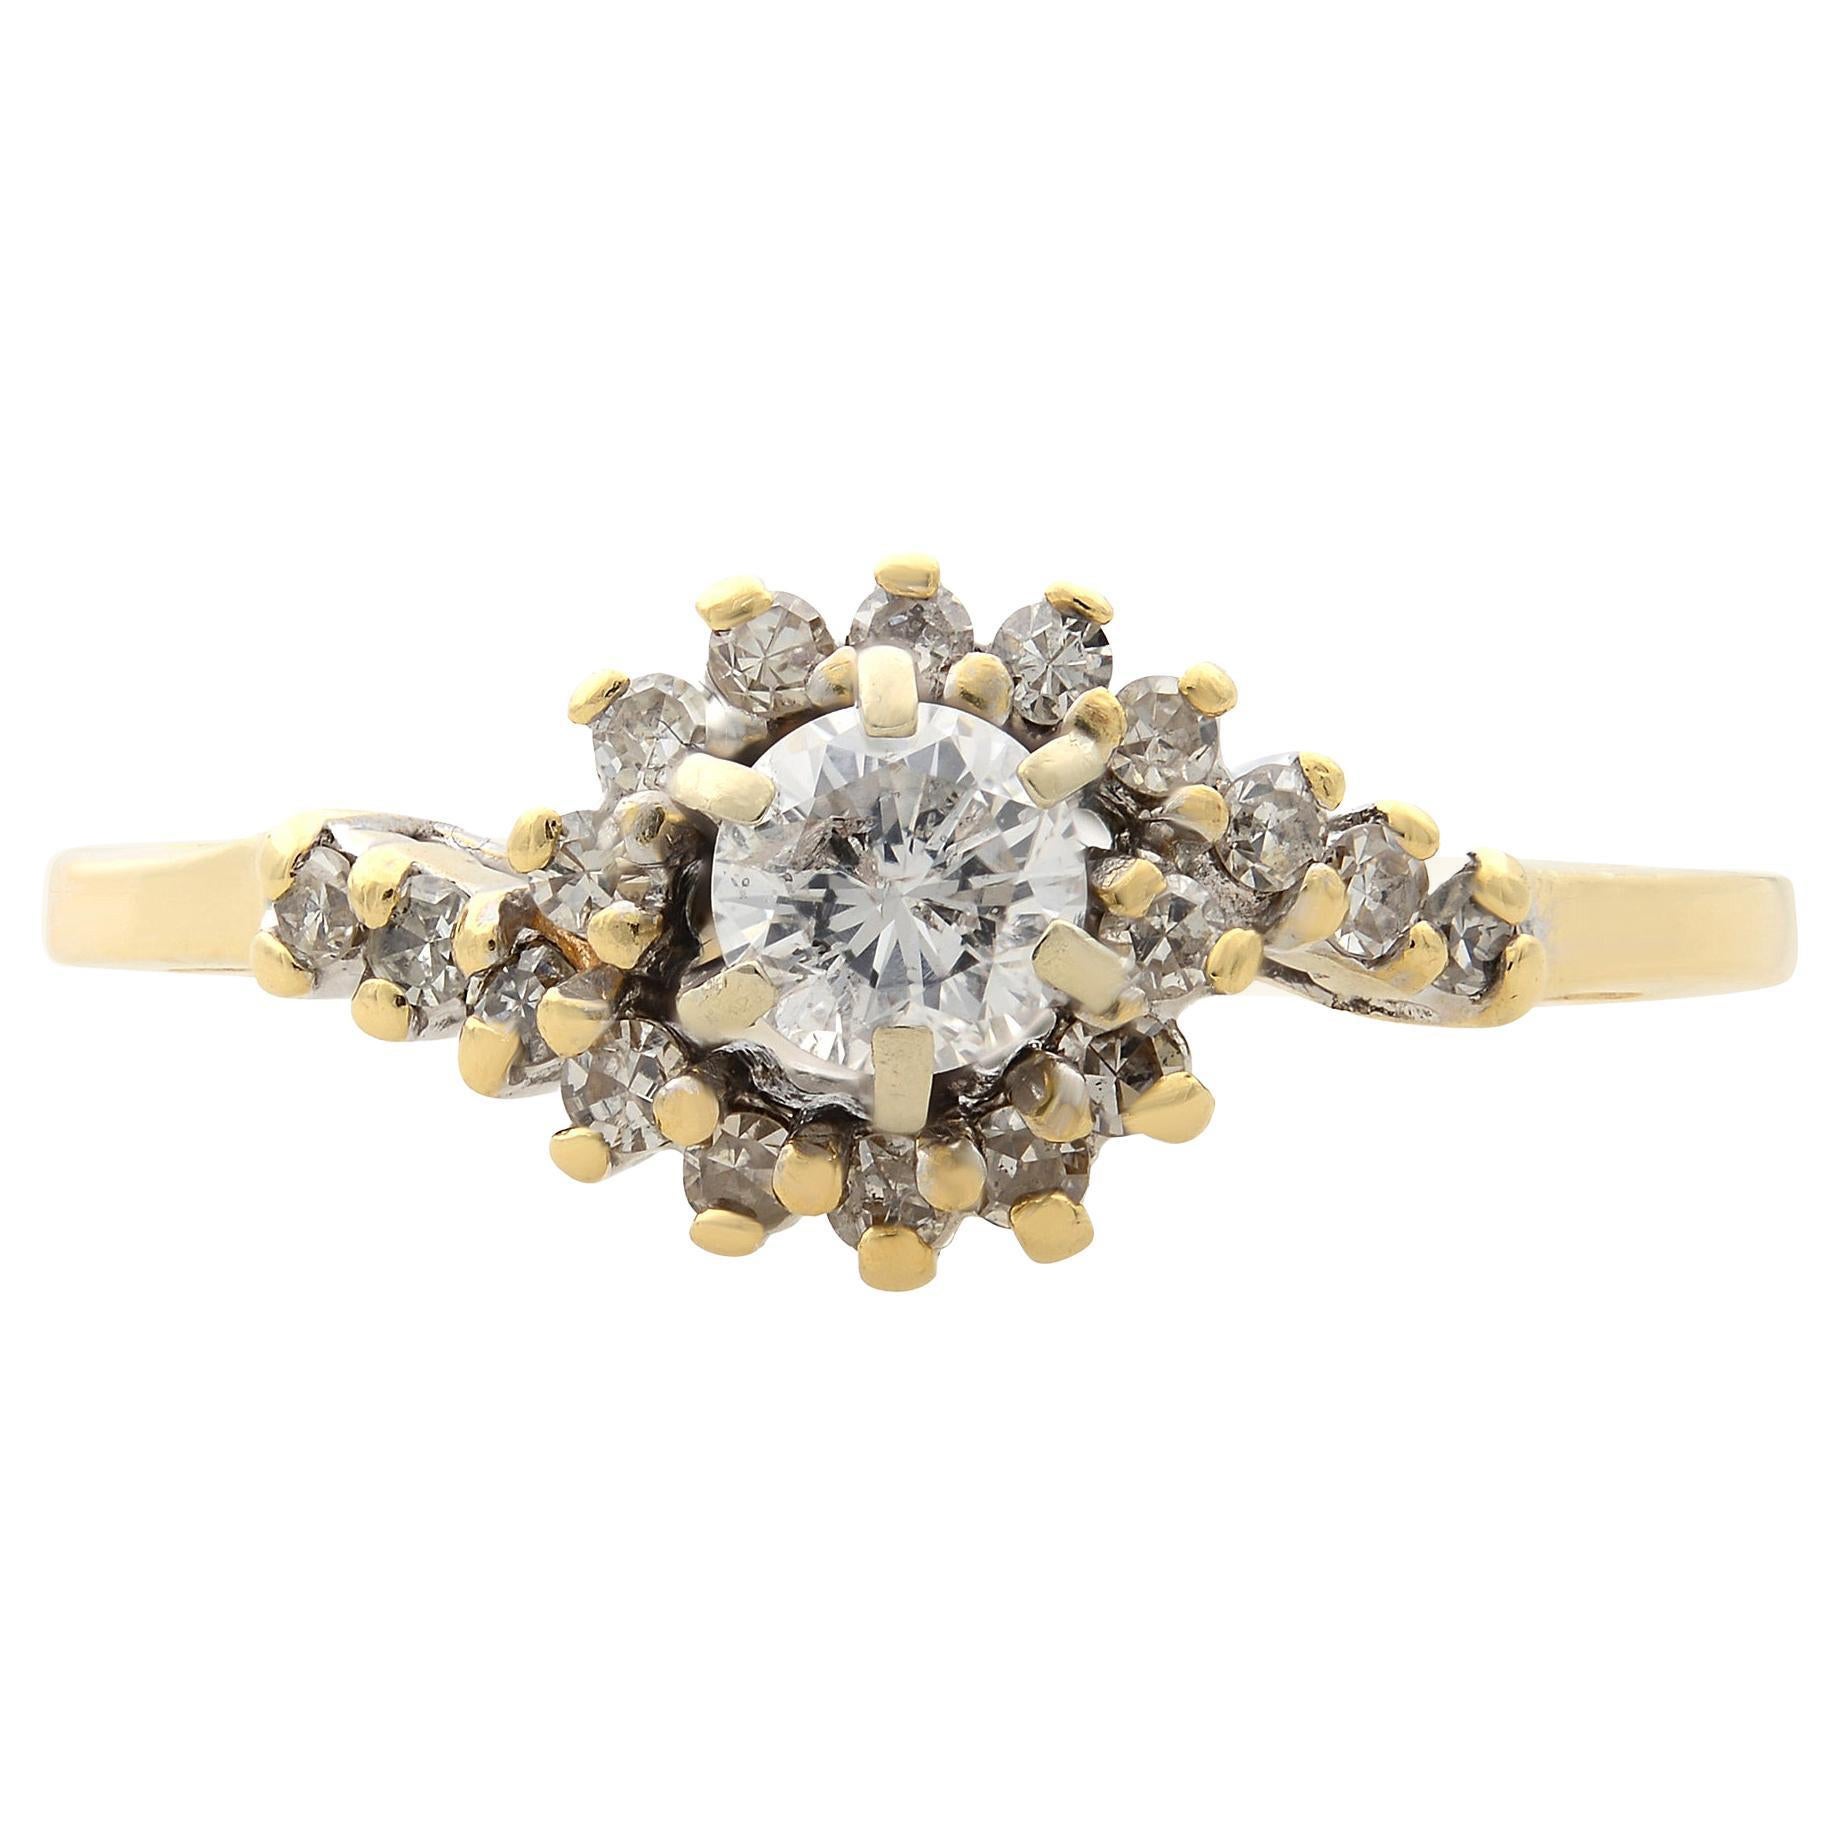 Rachel Koen Ladies Diamond Ring 14K Yellow Gold 0.33cttw For Sale